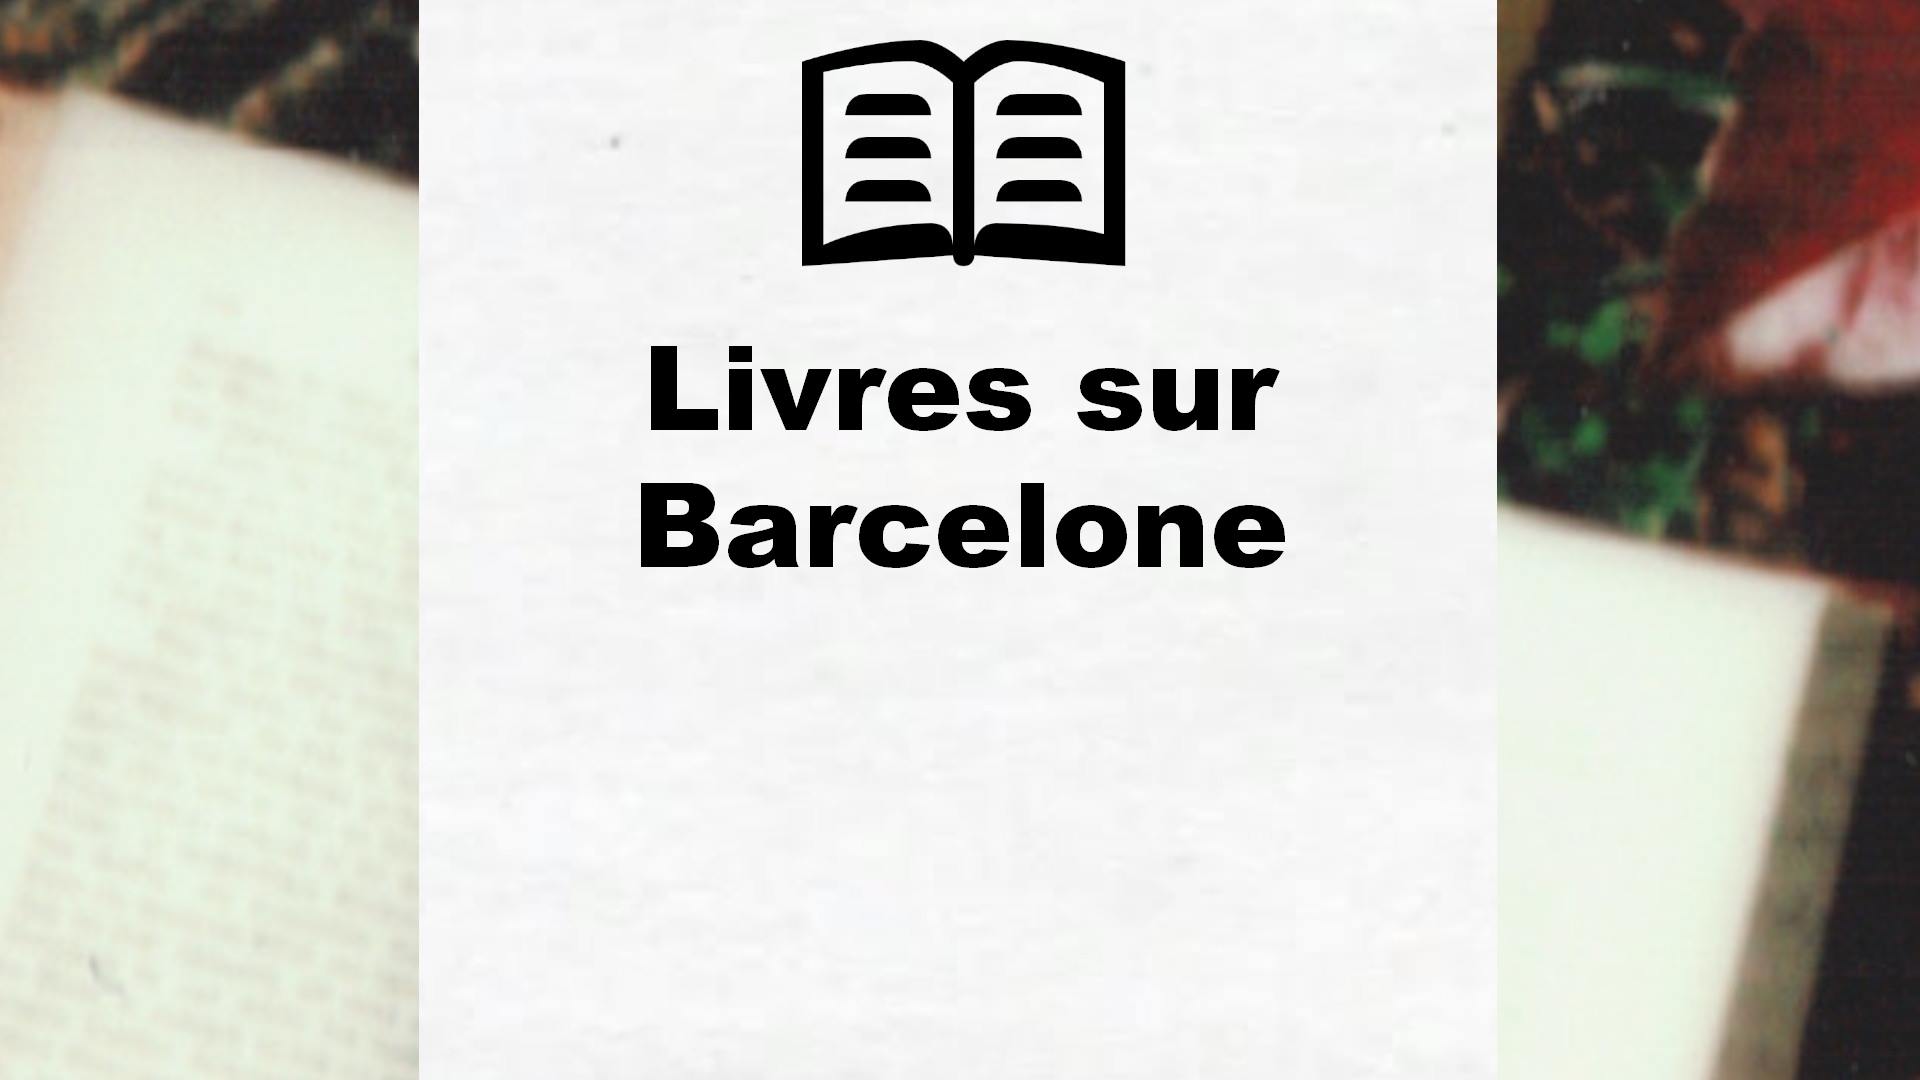 Livres sur Barcelone